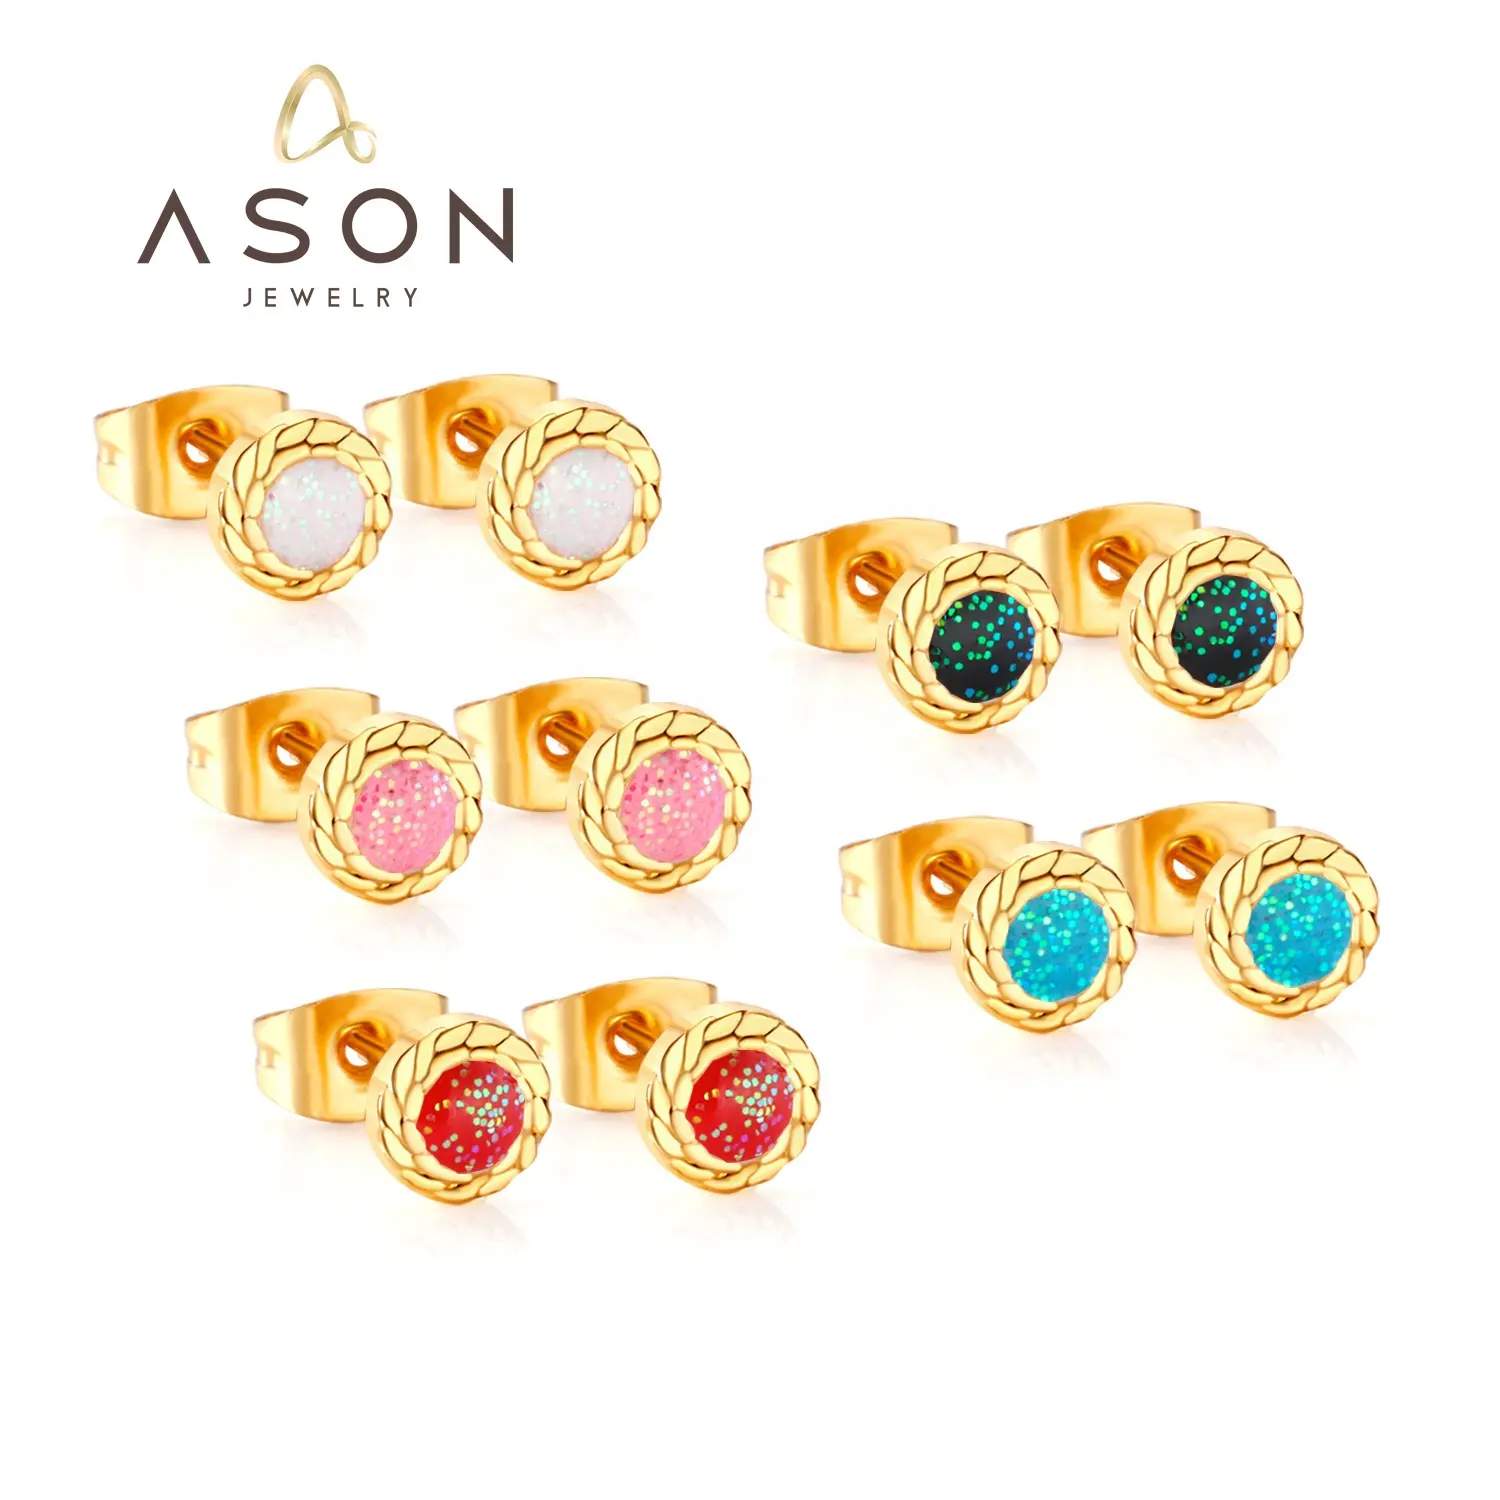 Brincos de aço inoxidável PVD 18K ouro fashion para meninas e mulheres, conjunto popular de joias com botões redondos e cores, joias Ason